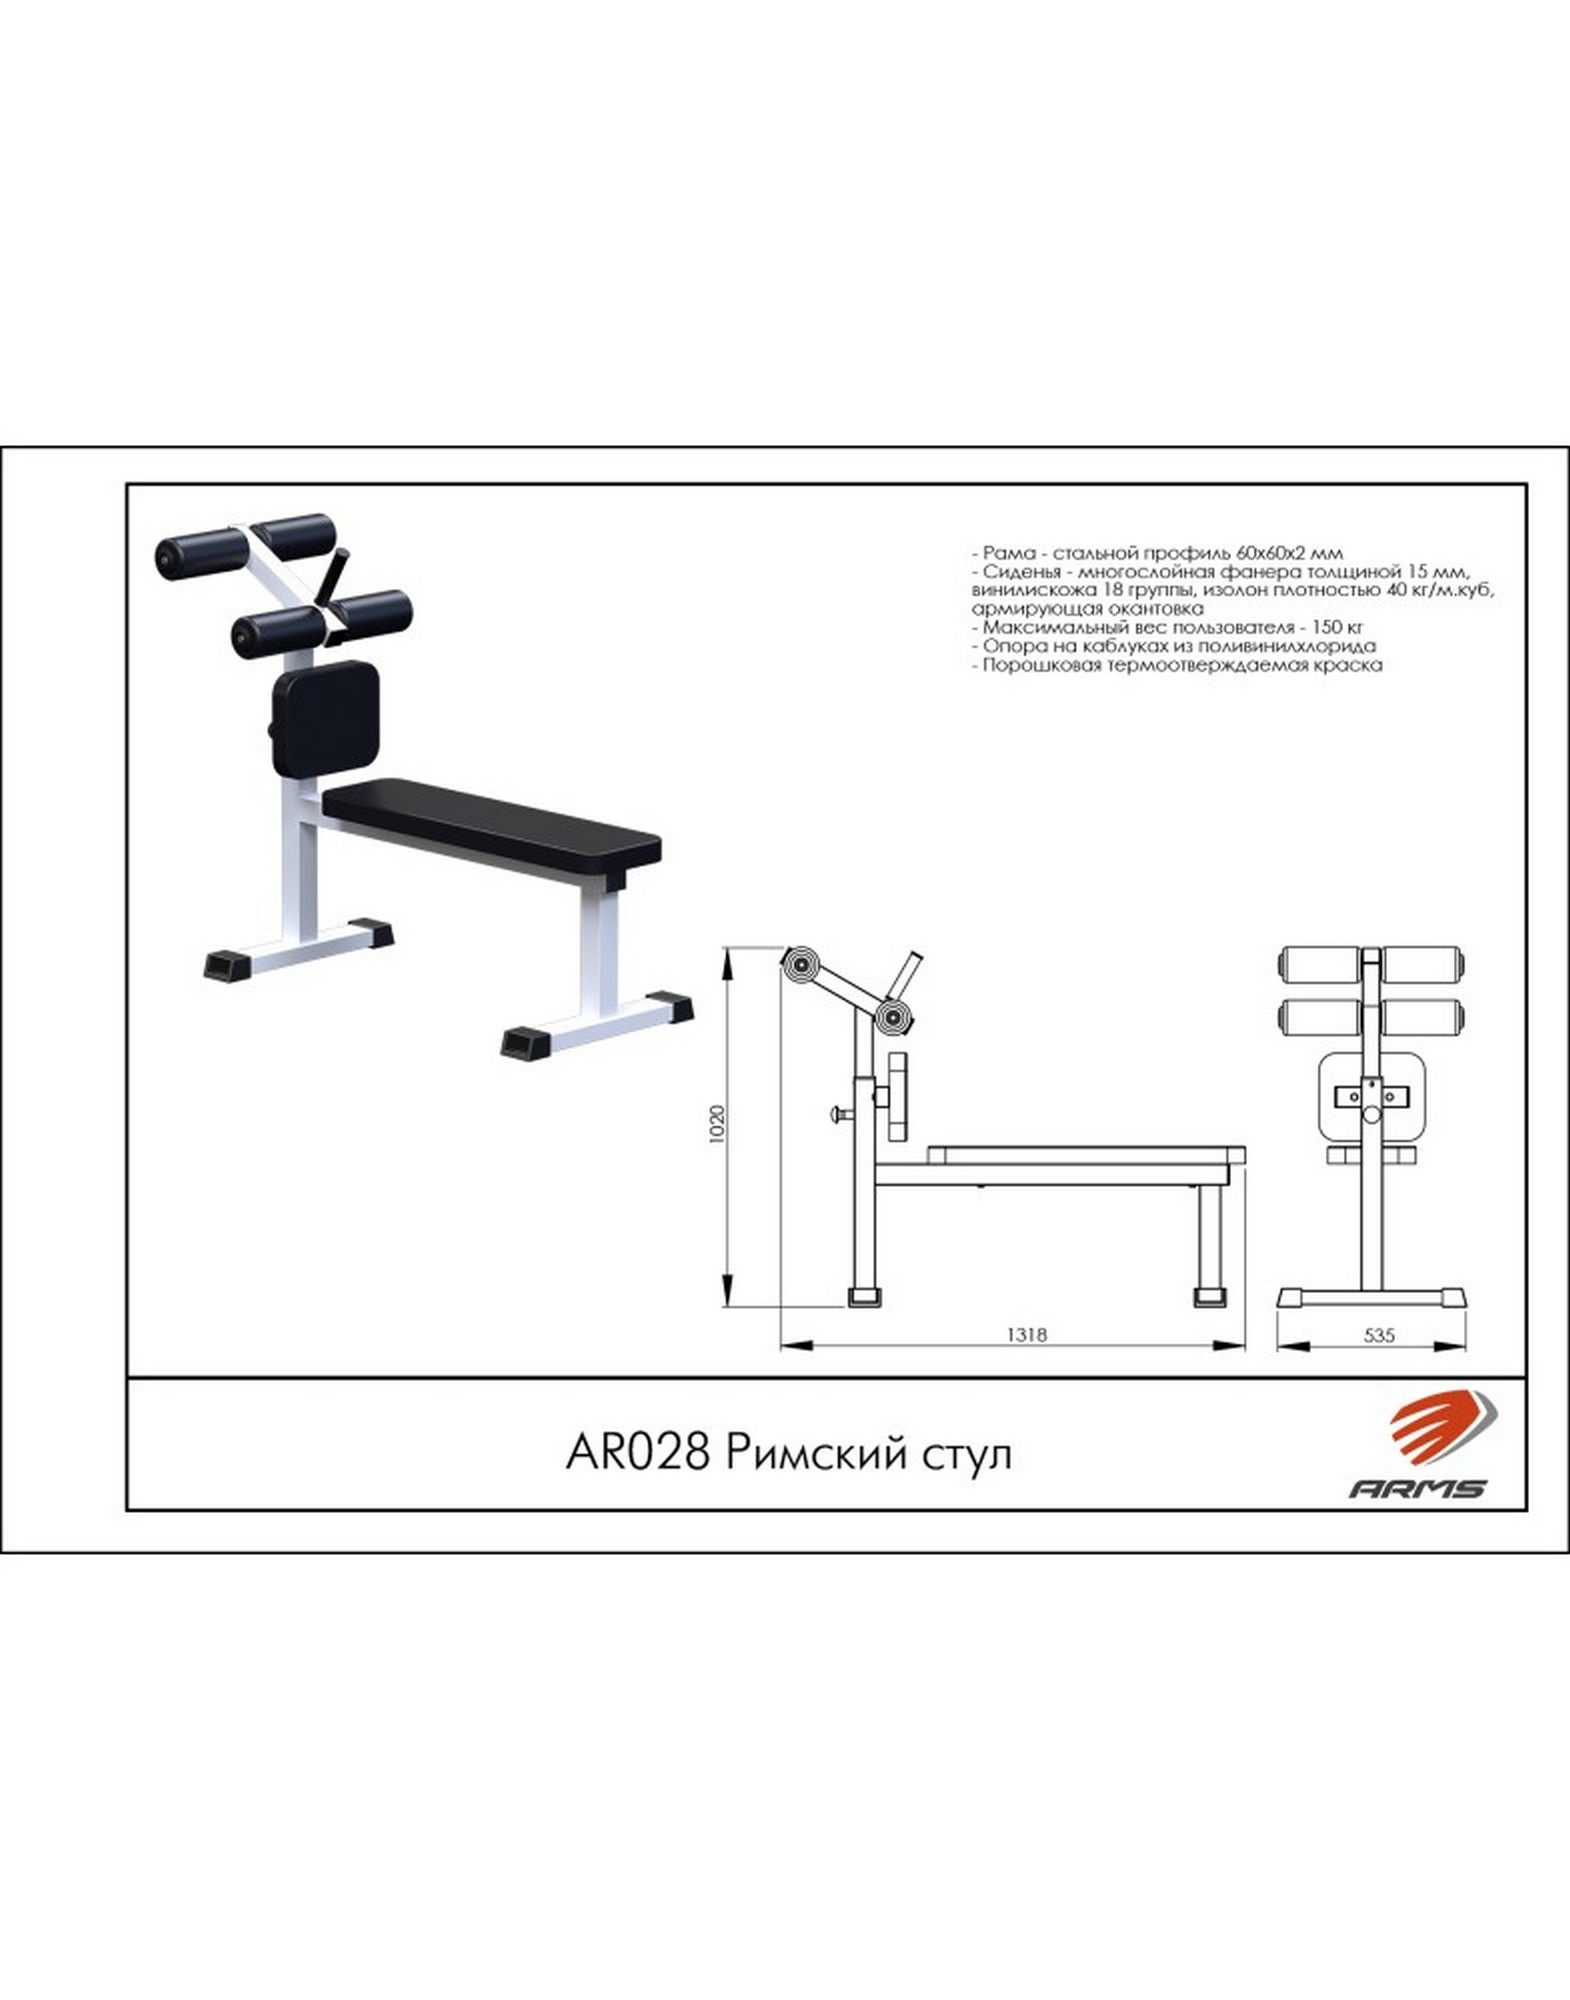 Римский стул ARMS AR028 1570_2000